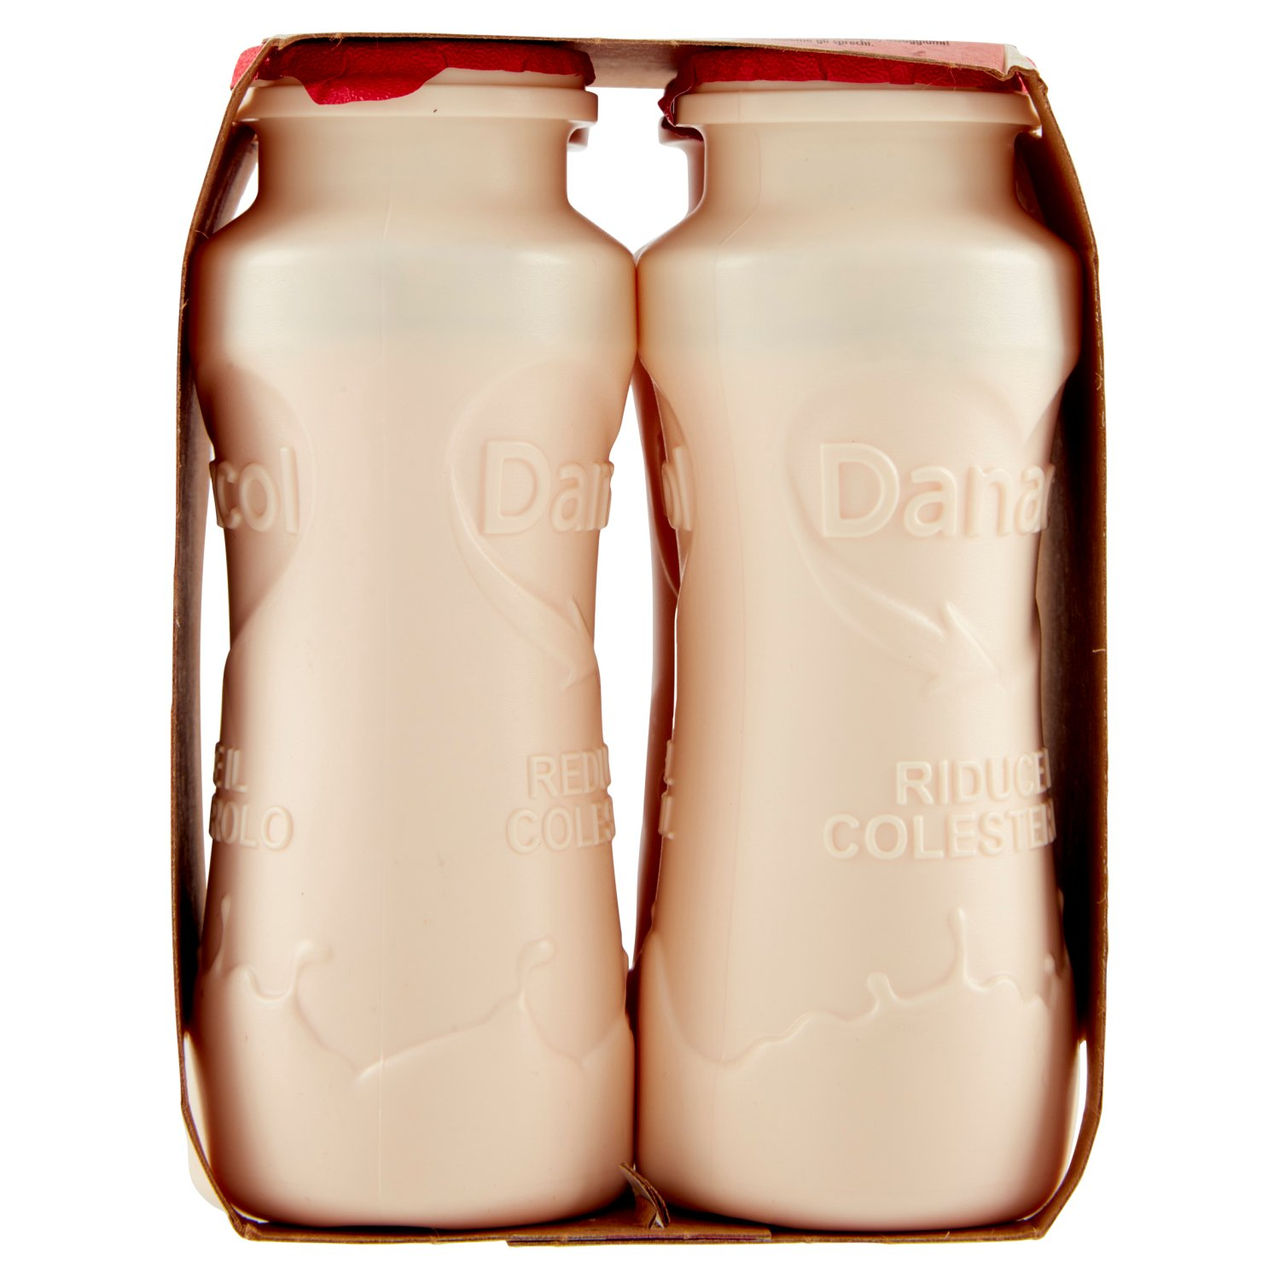 DANACOL Yogurt da bere, Riduce il Colesterolo grazie agli Steroli Vegetali, gusto Fragola, 4x100g